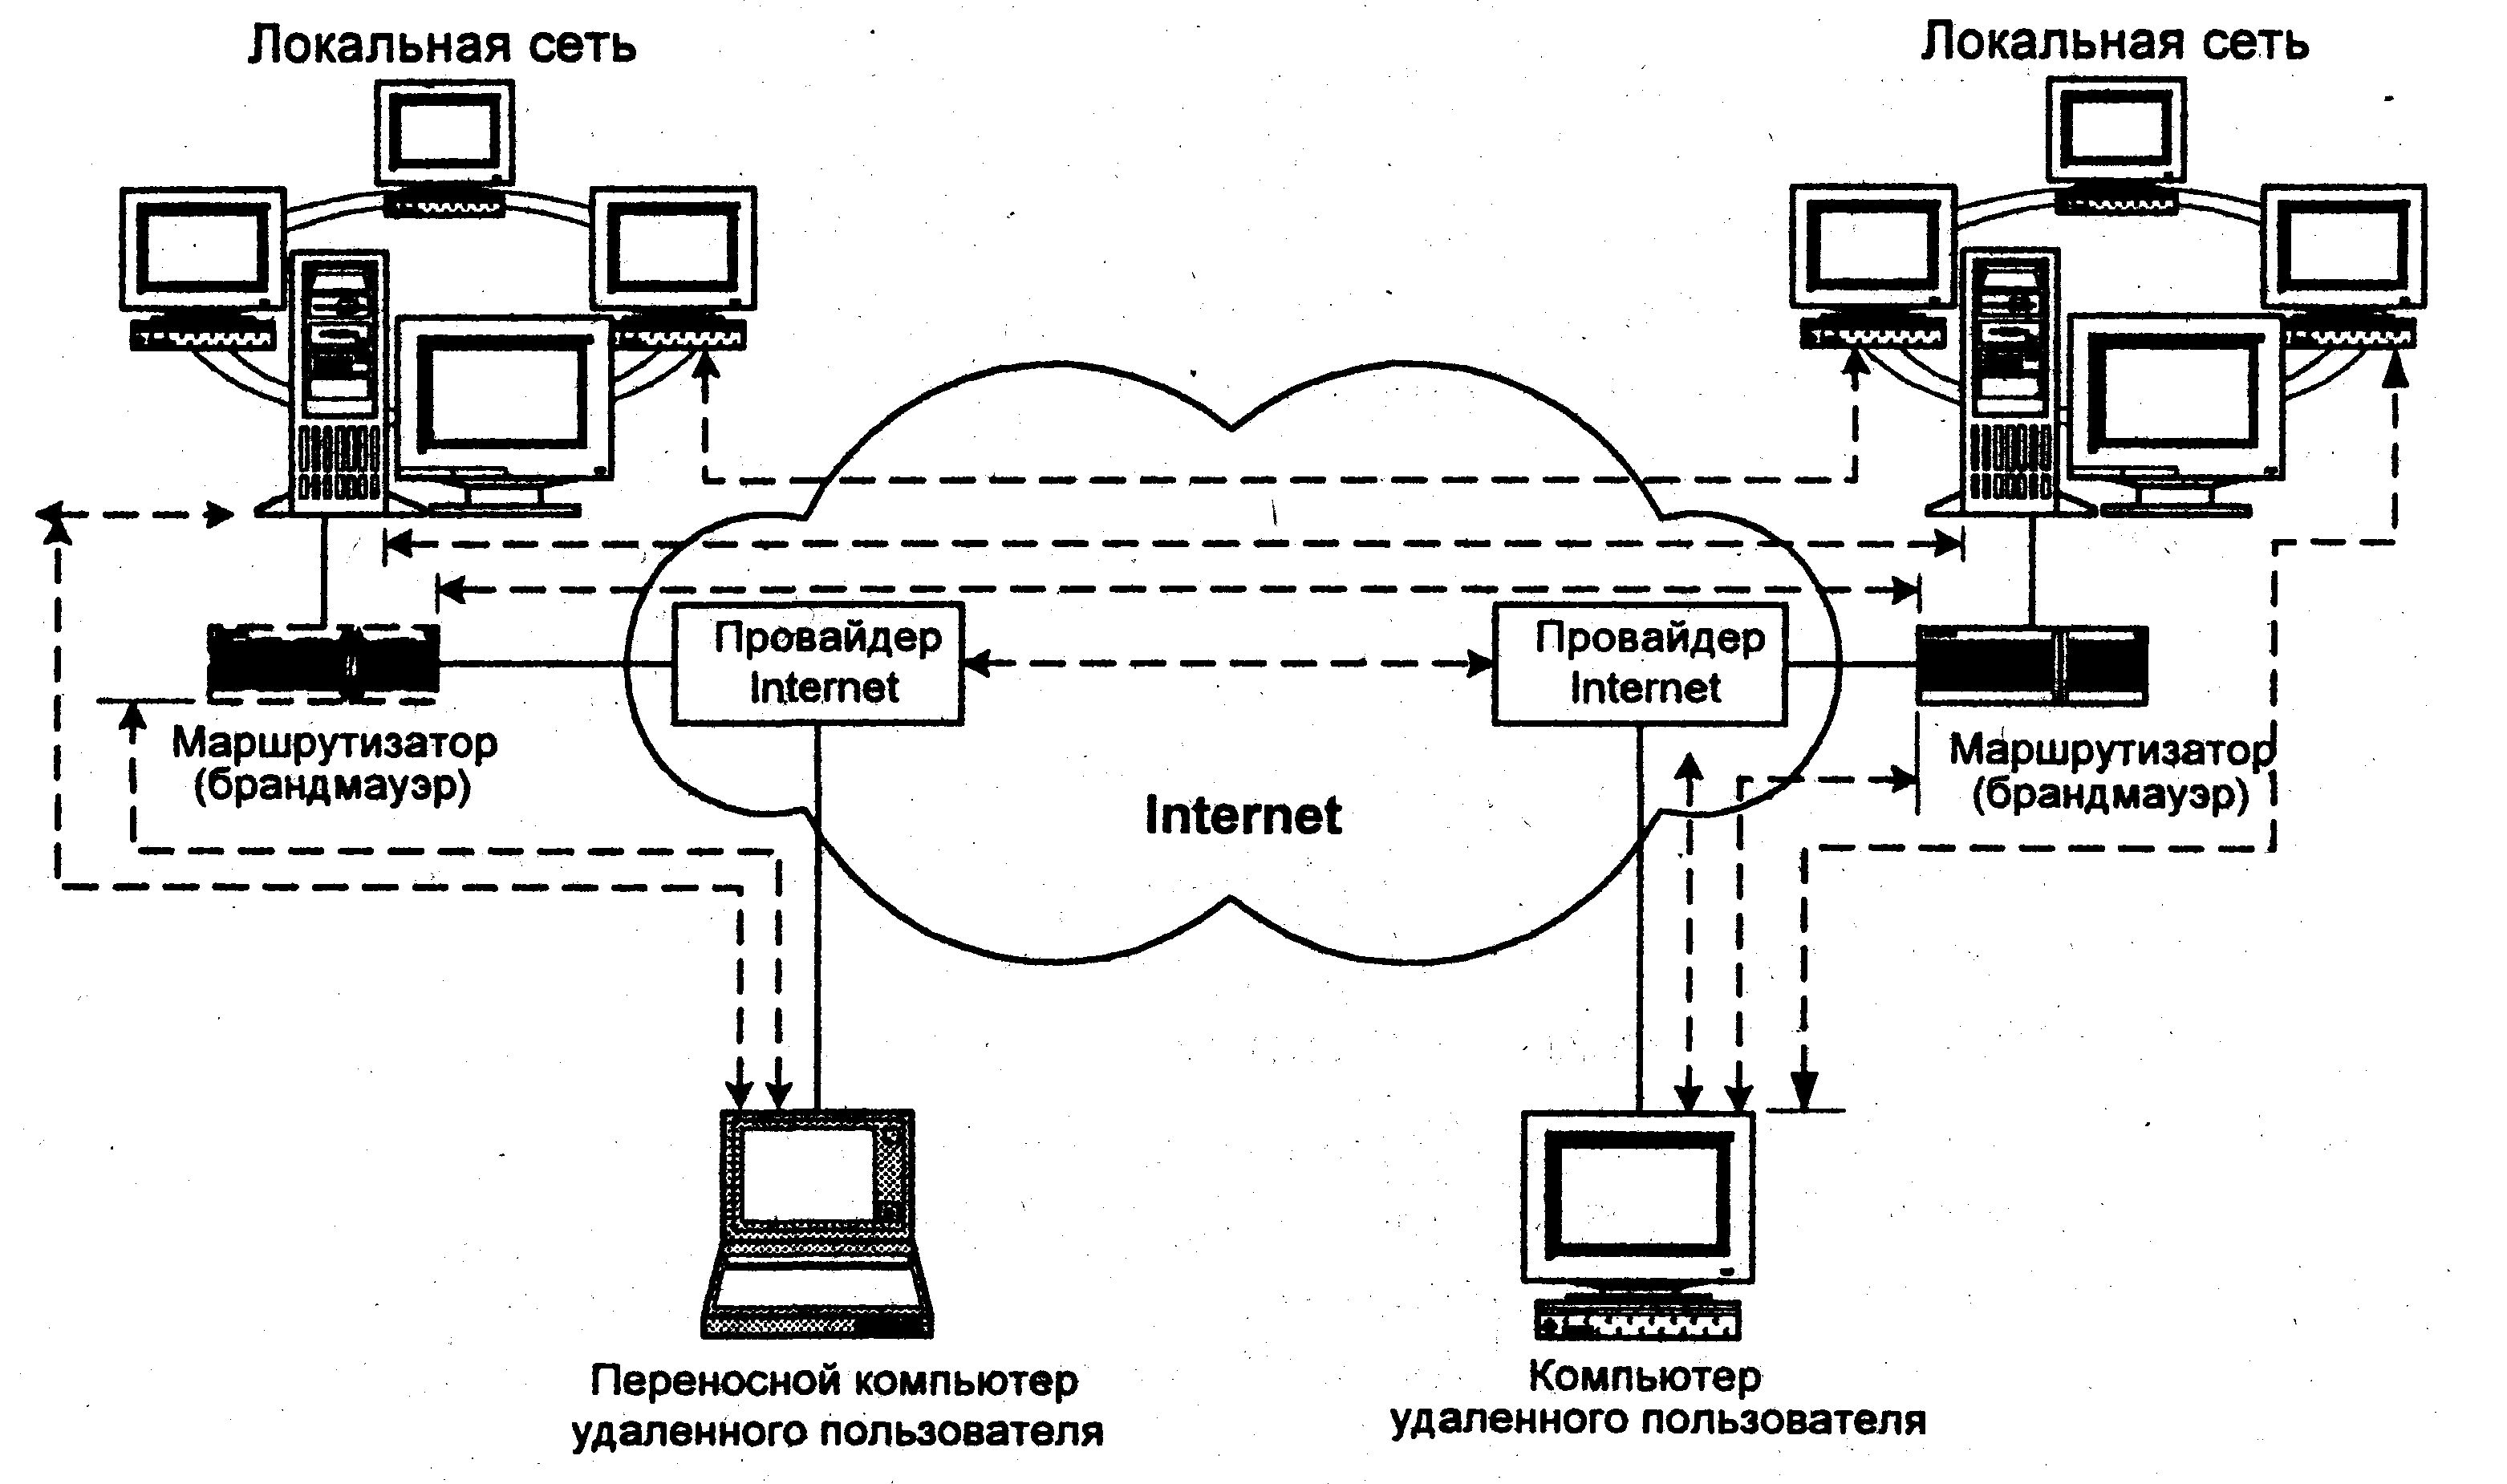 Сеть местный сайт. Локальная вычислительная сеть локальные вычислительные сети. Моделирование компьютерных сетей топология звезда схема. Локально вычислительная сеть схема. Локальной вычеслительная сеть.